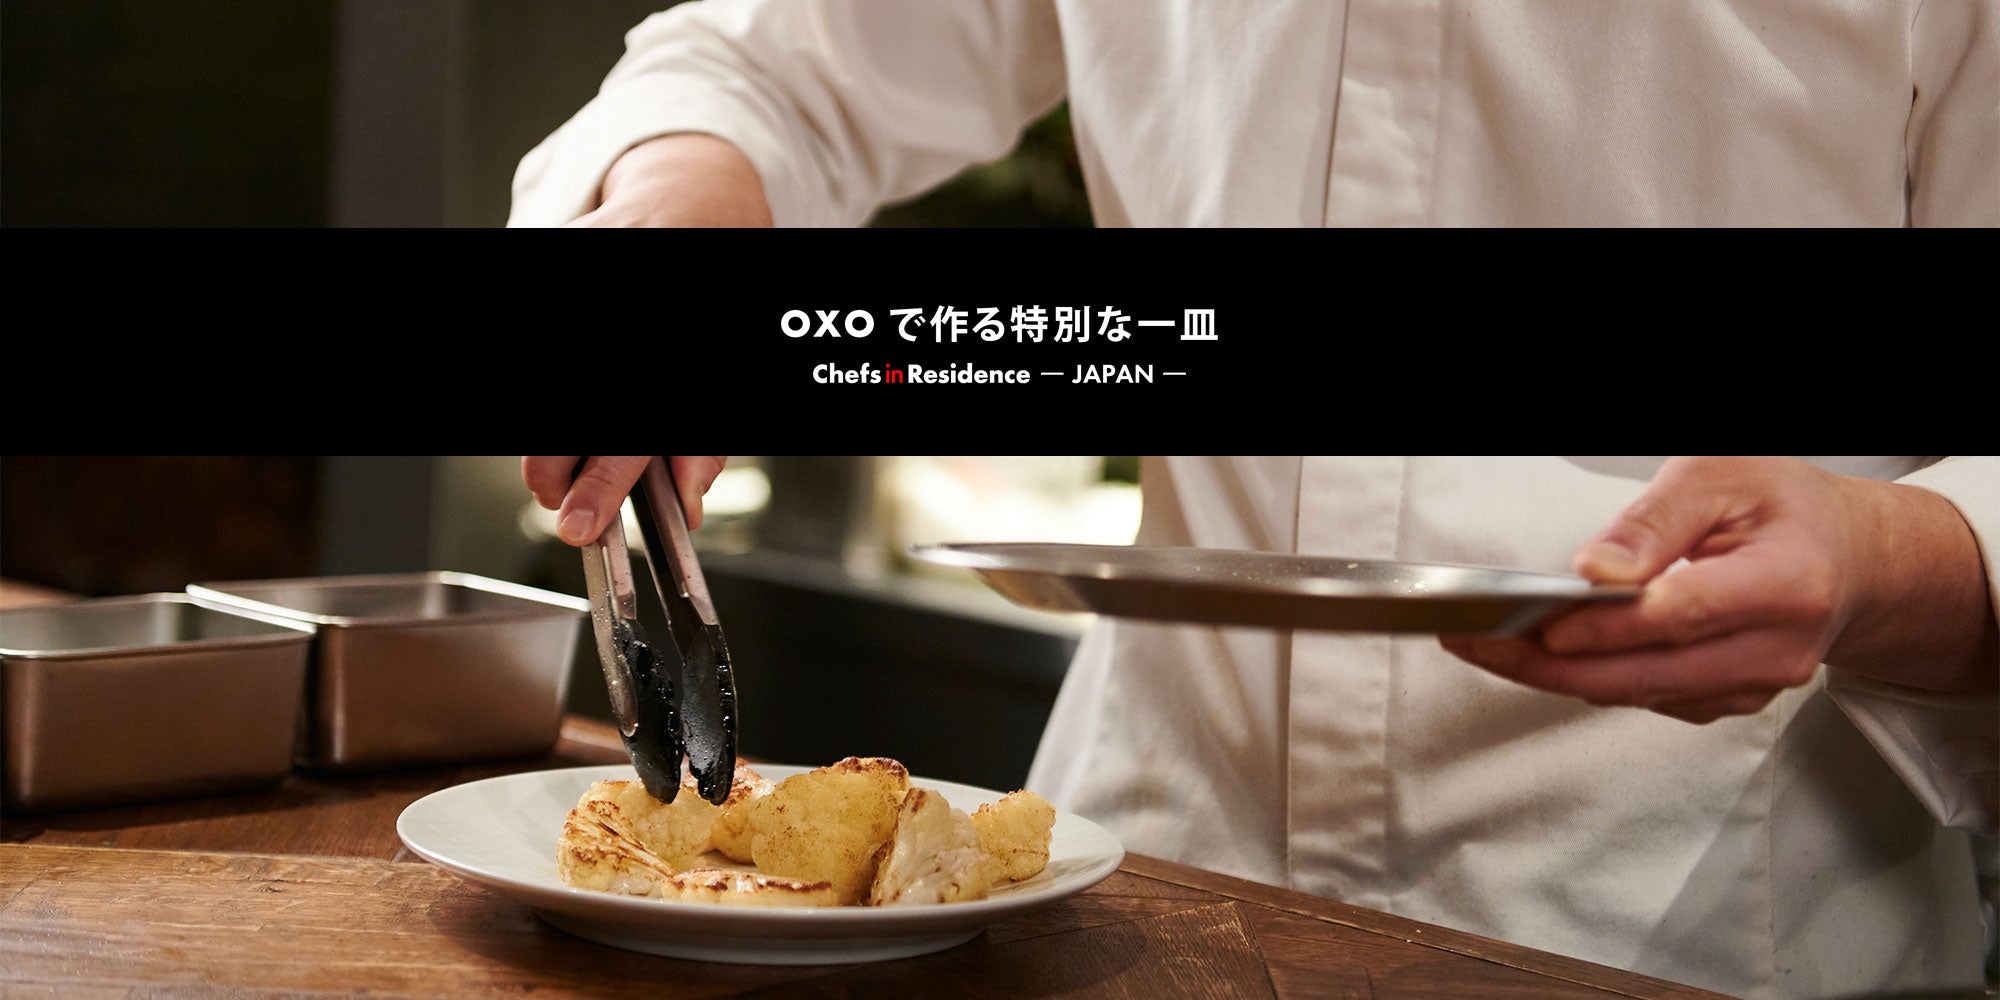 OXOで作る特別な一皿<br>-Chefs in Residence-<br>米澤文雄シェフのカリフラワーのロースト カレー風味のメープルライムタヒニソース